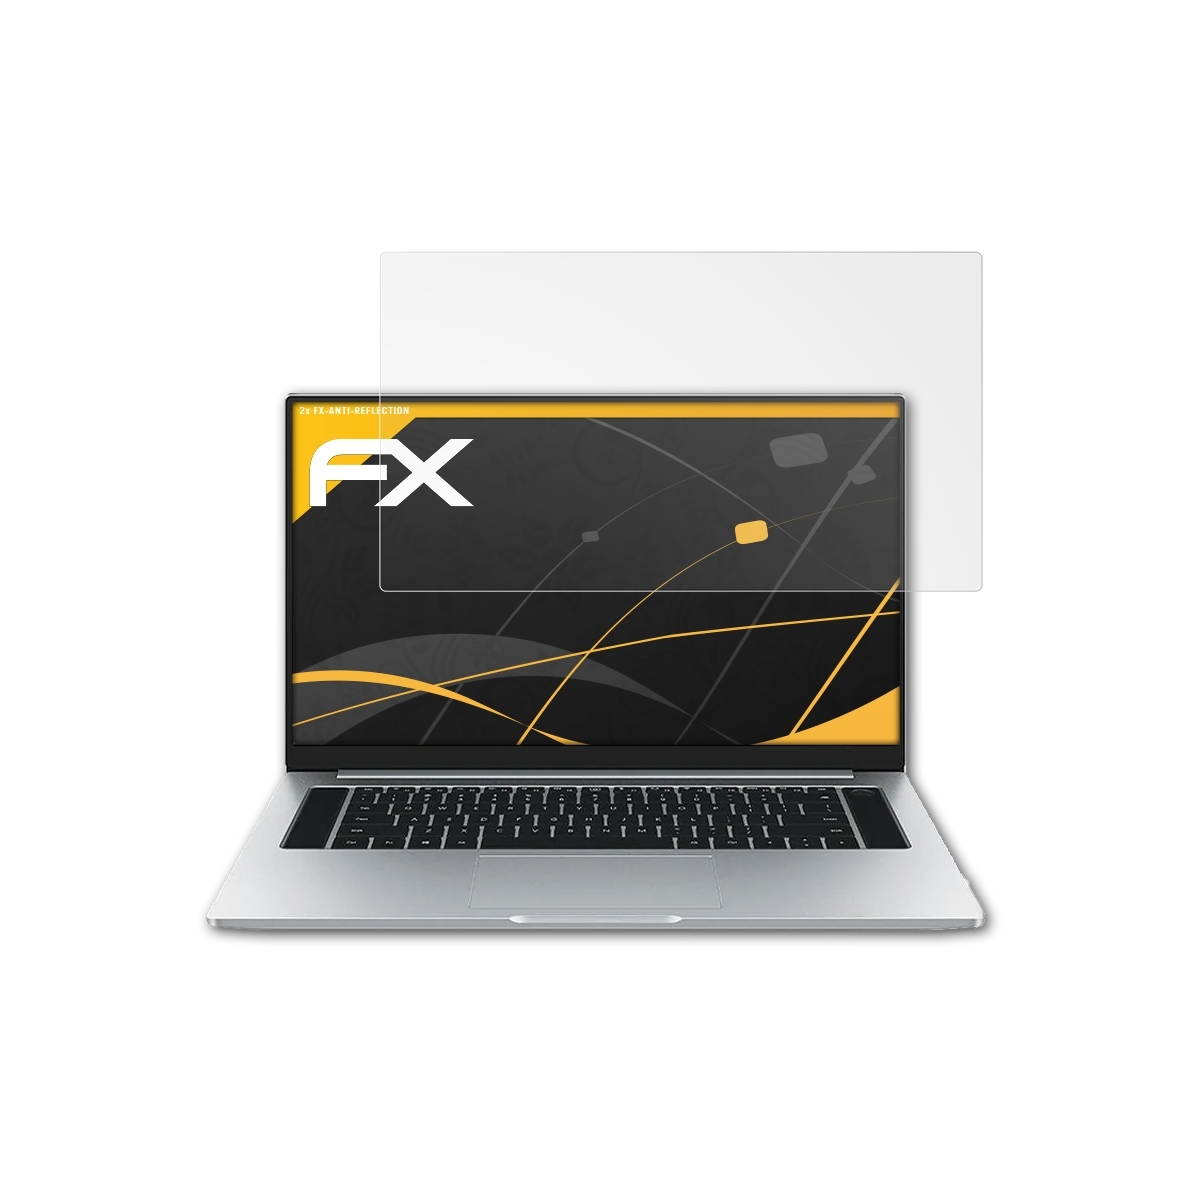 ATFOLIX 2x FX-Antireflex Displayschutz(für Huawei MagicBook Inch)) (16 Honor Pro